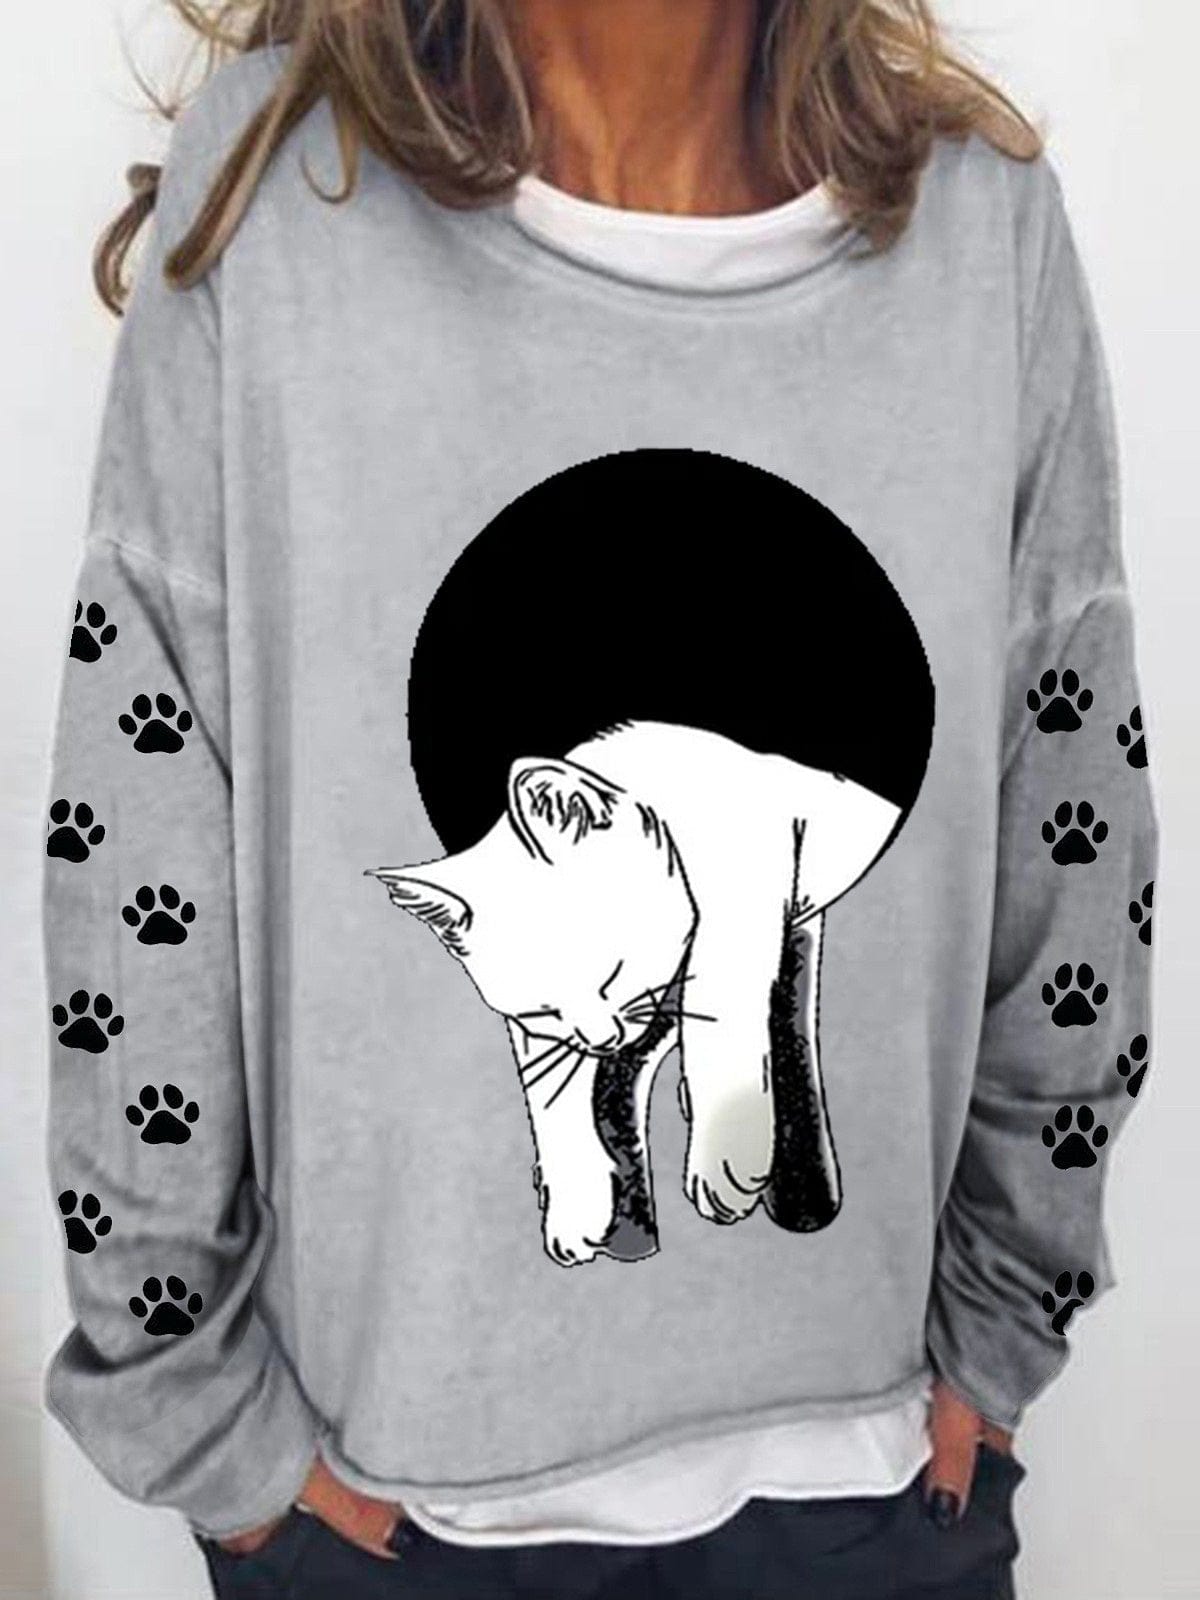 MsDressly Hoodies Long Sleeve Cat Printed Sweatshirt HOO221230002GRYS